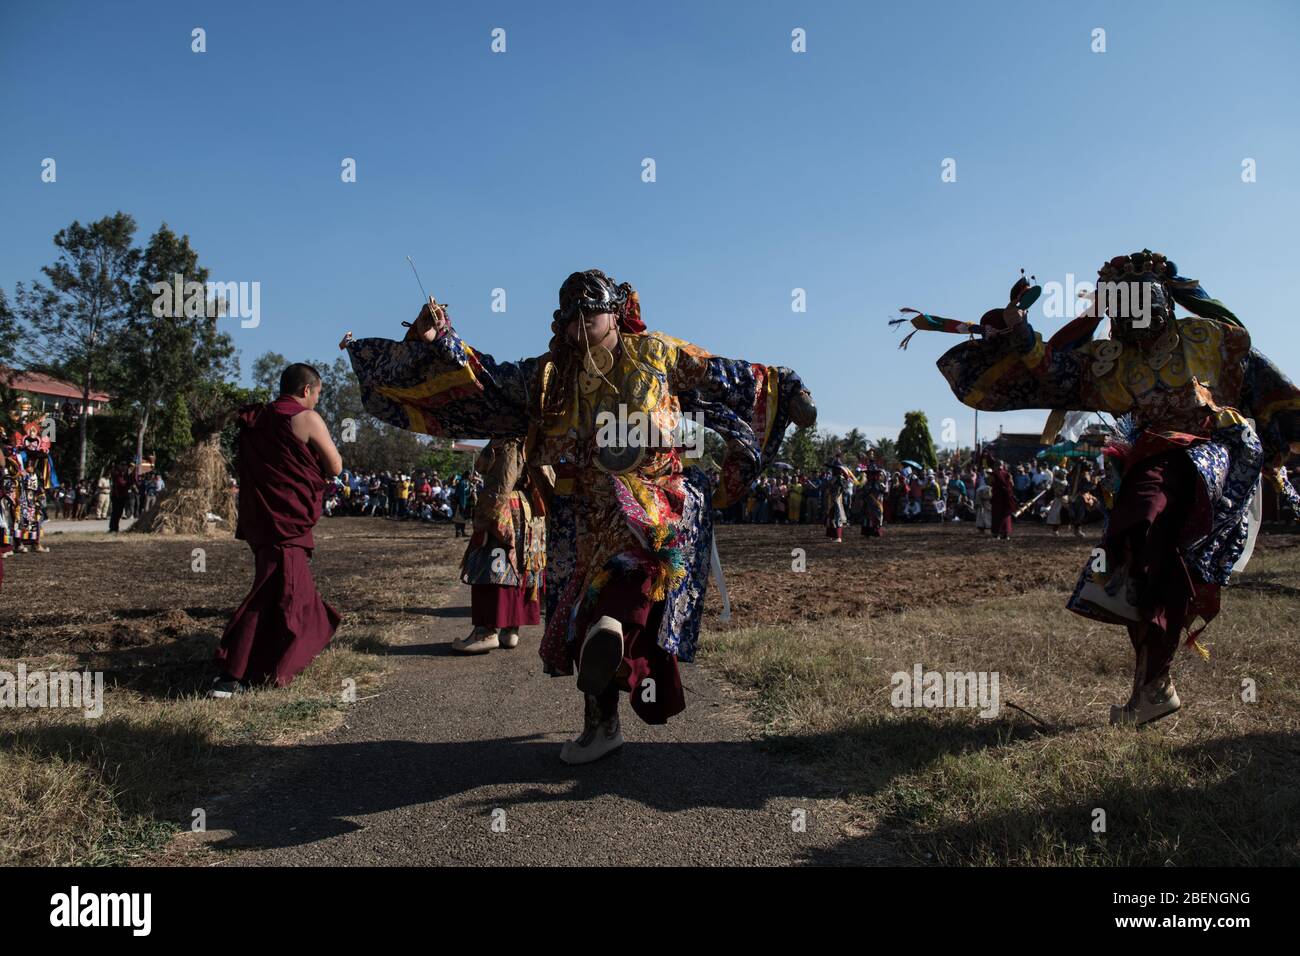 Danse Cham avec masques de moines tibétains pendant le Losar (nouvel an tibétain) dans la colonie tibétaine de Gurupura, Karnataka, Inde du Sud. Banque D'Images